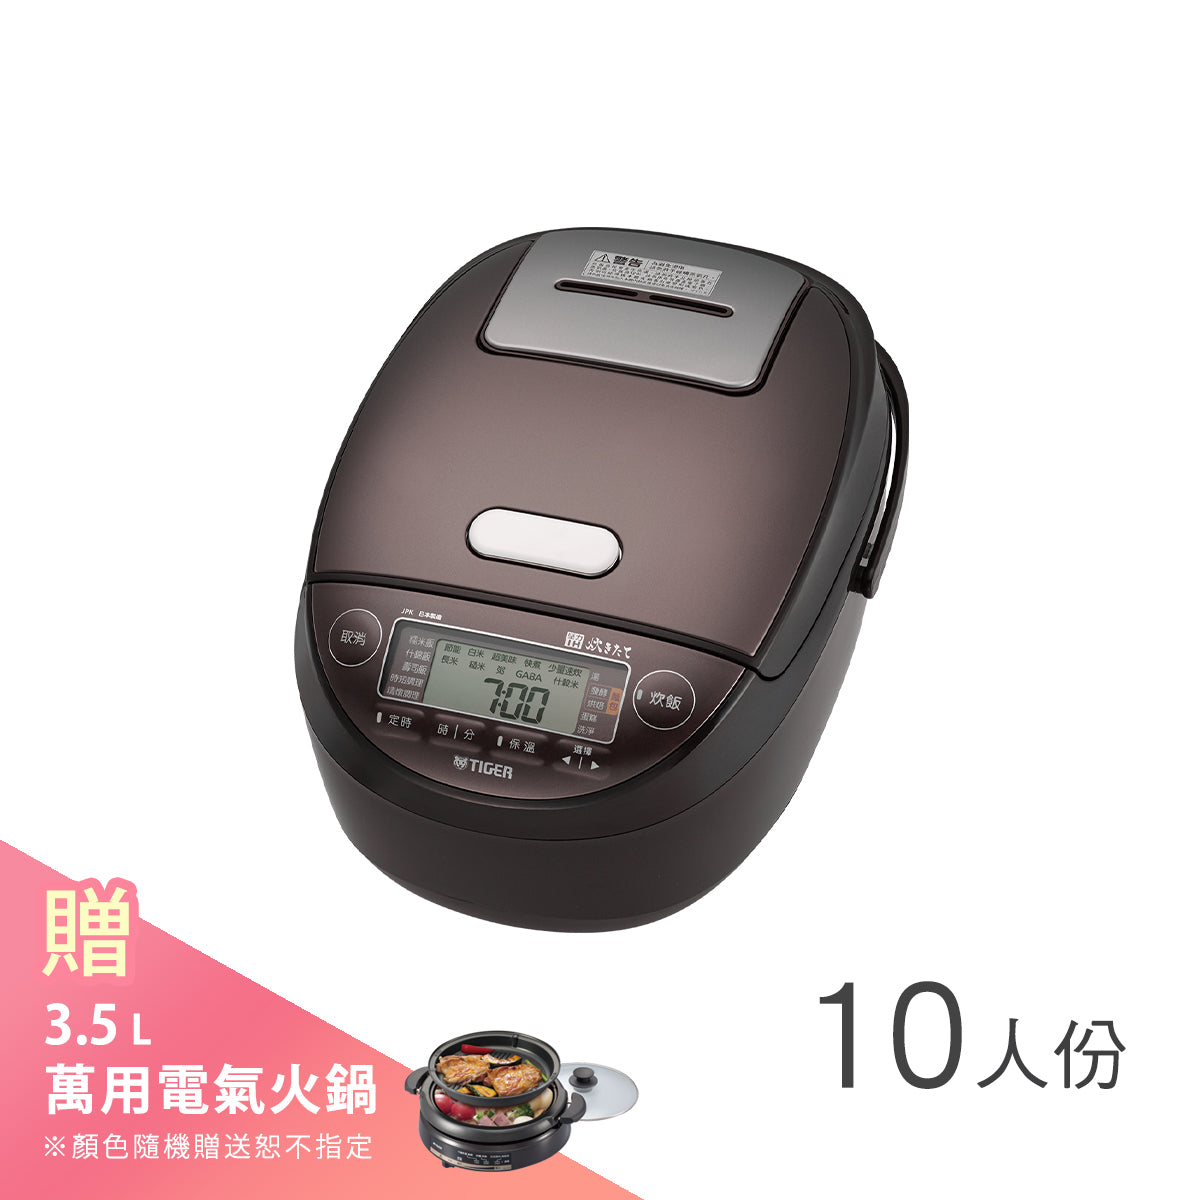 【日本製】10人份 高火力IH壓力炊飯電子鍋 (JPK-G18R)